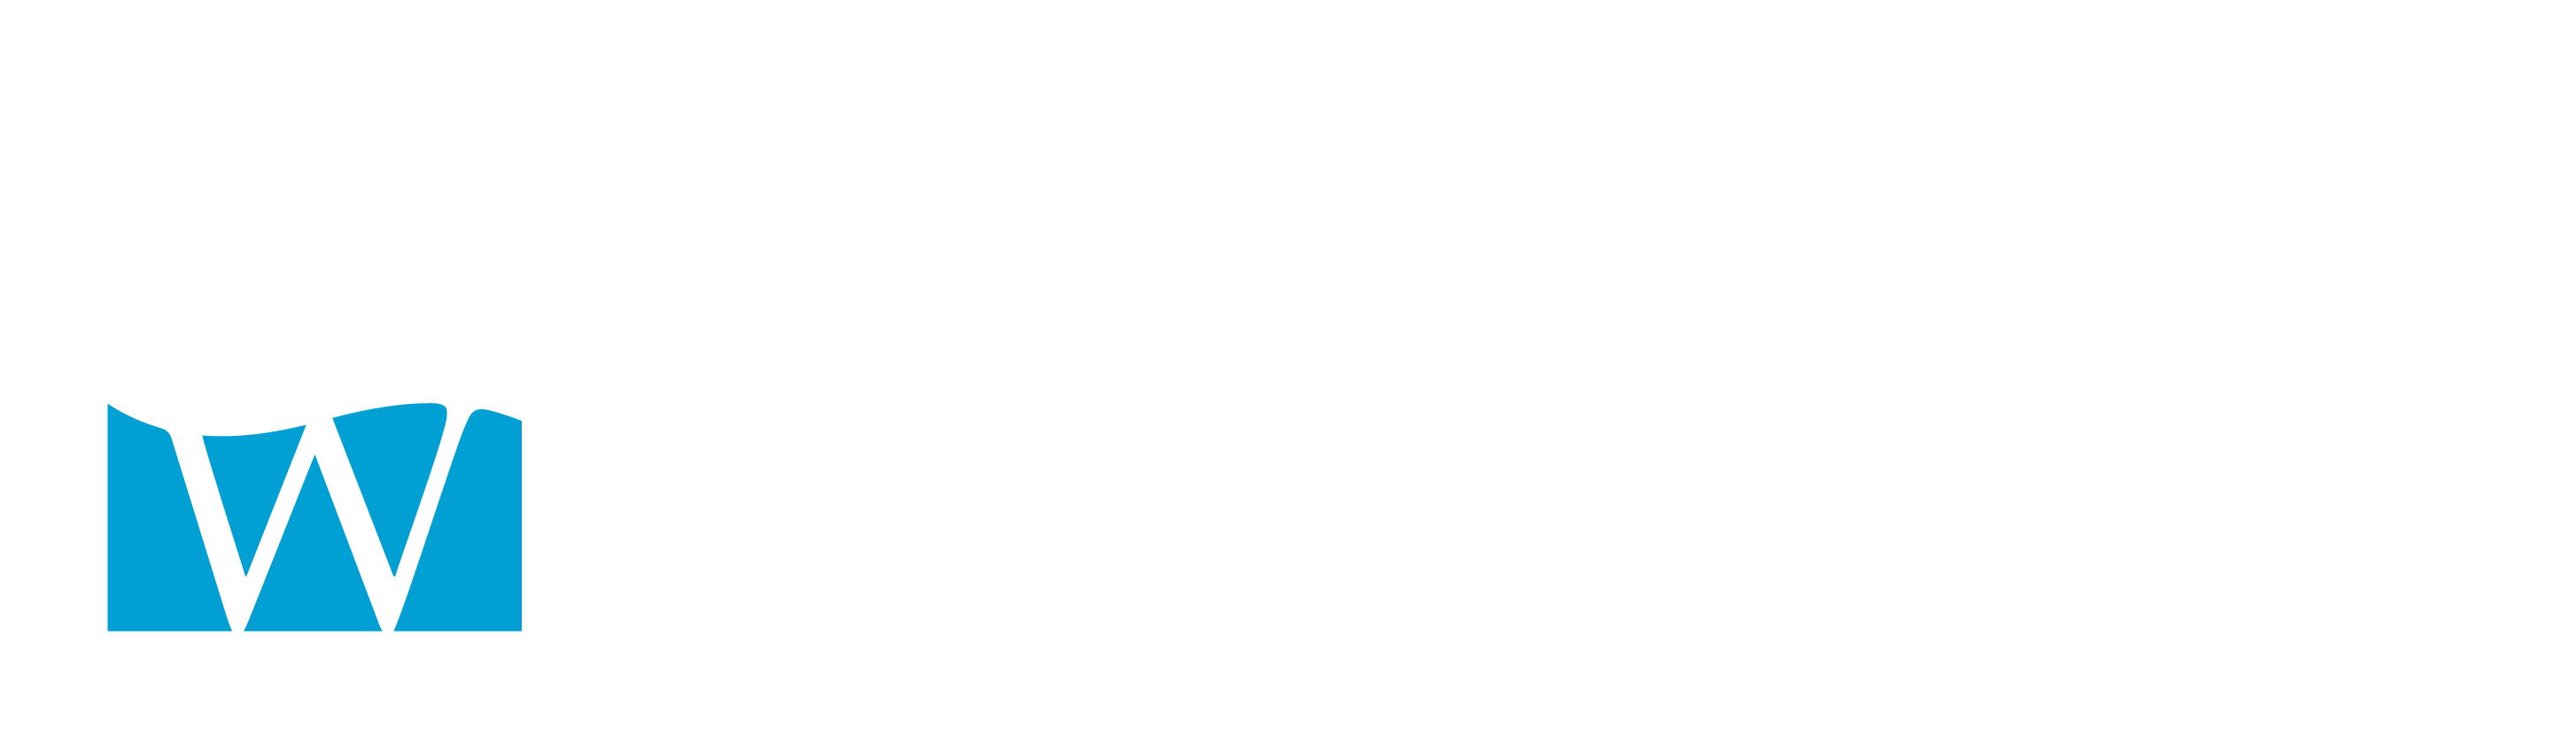 BLUWATER_TM logo